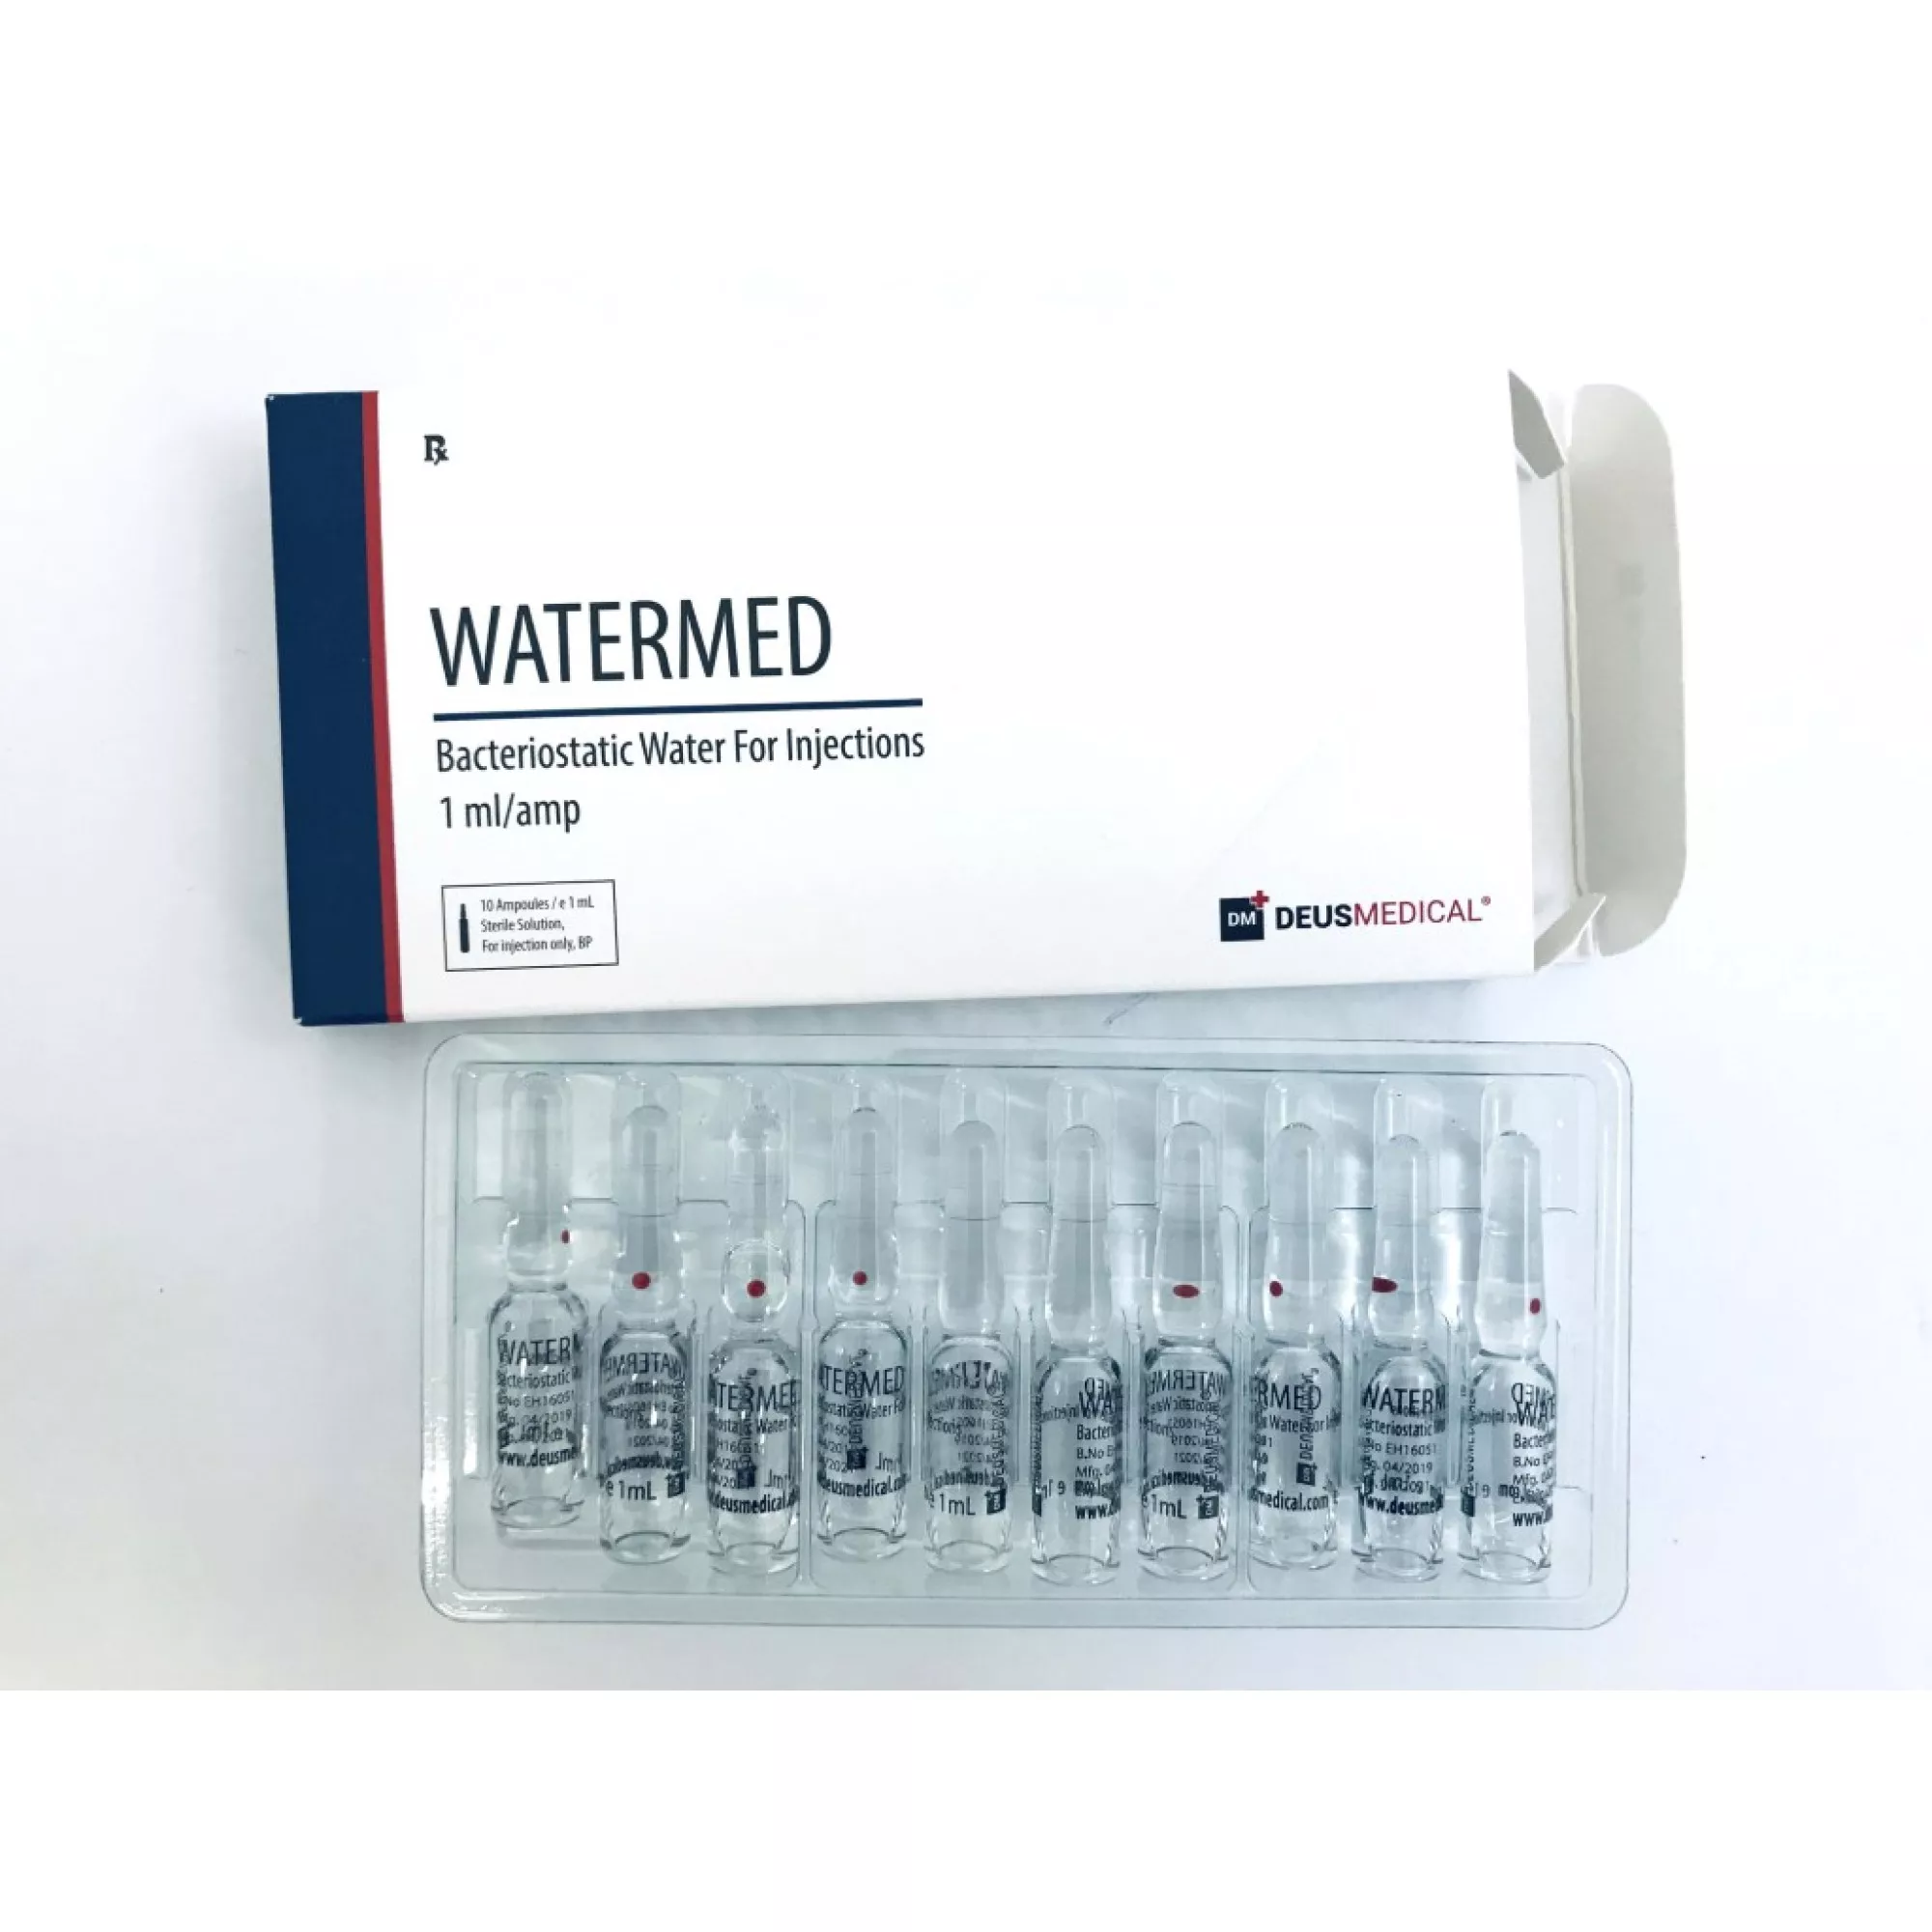 WATERMED (Bakteriostatisches Wasser), Deus Medical, Kaufen Sie Steroide Online - www.deuspower.shop